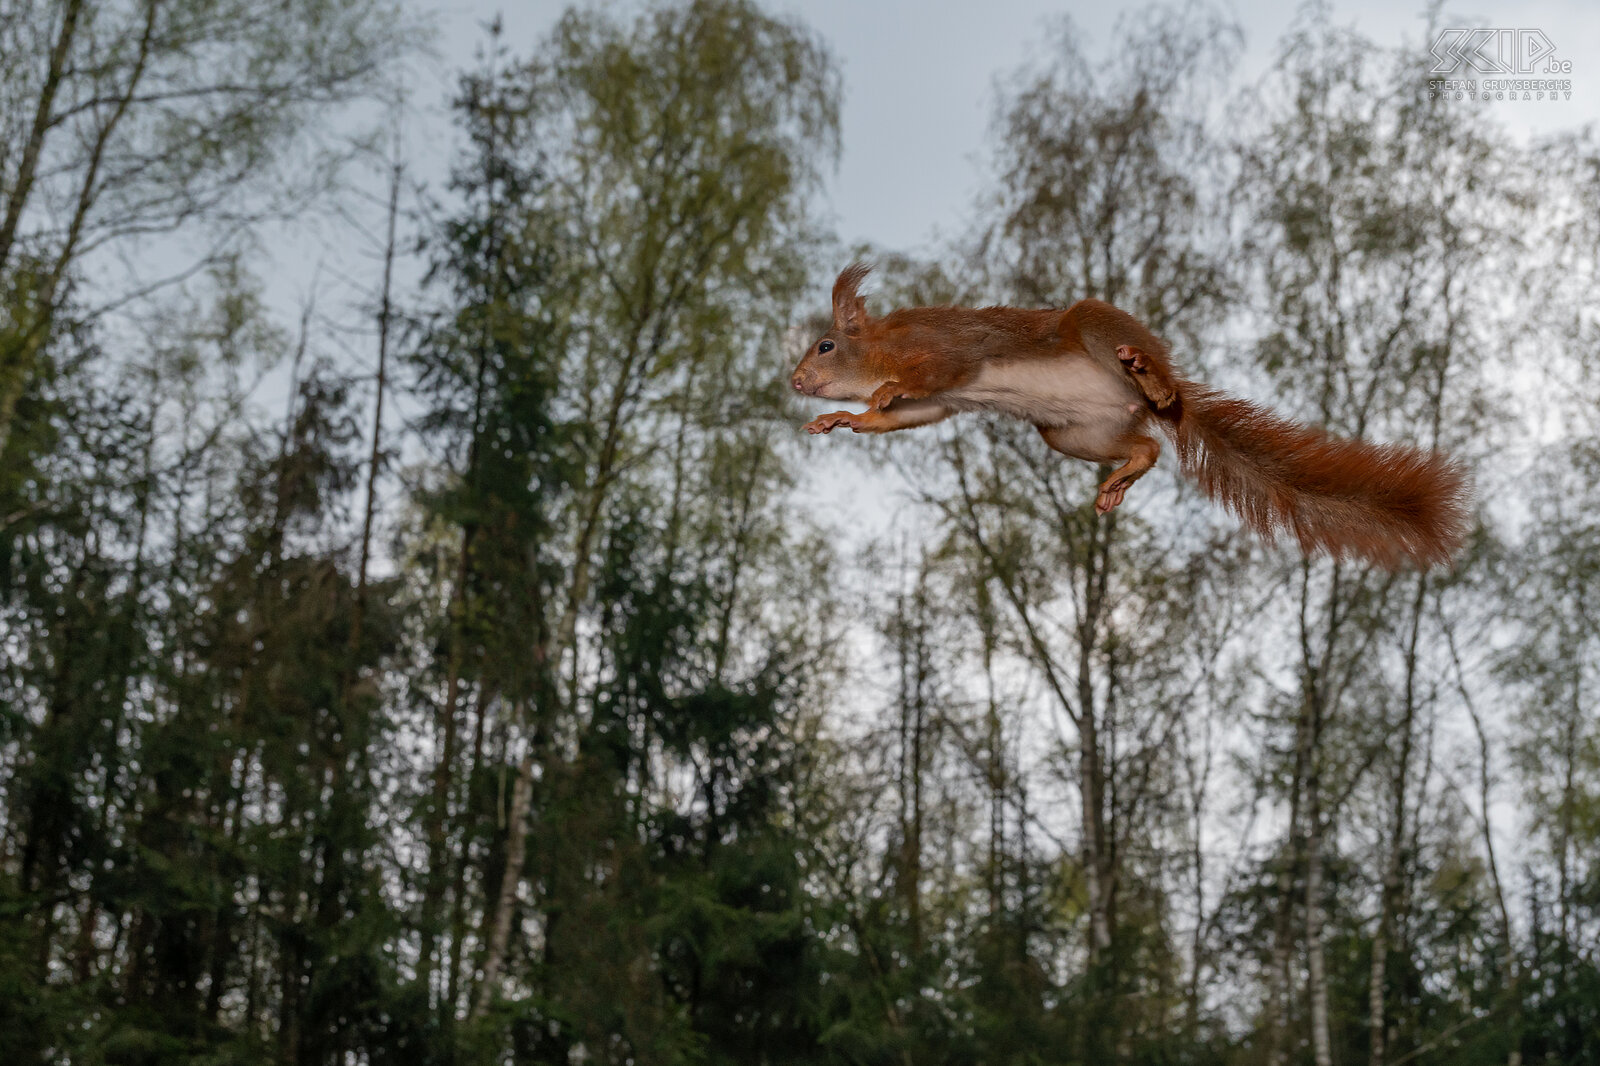 Springende eekhoorn Eekhoorn / Red squirrel / Sciurus vulgaris Stefan Cruysberghs